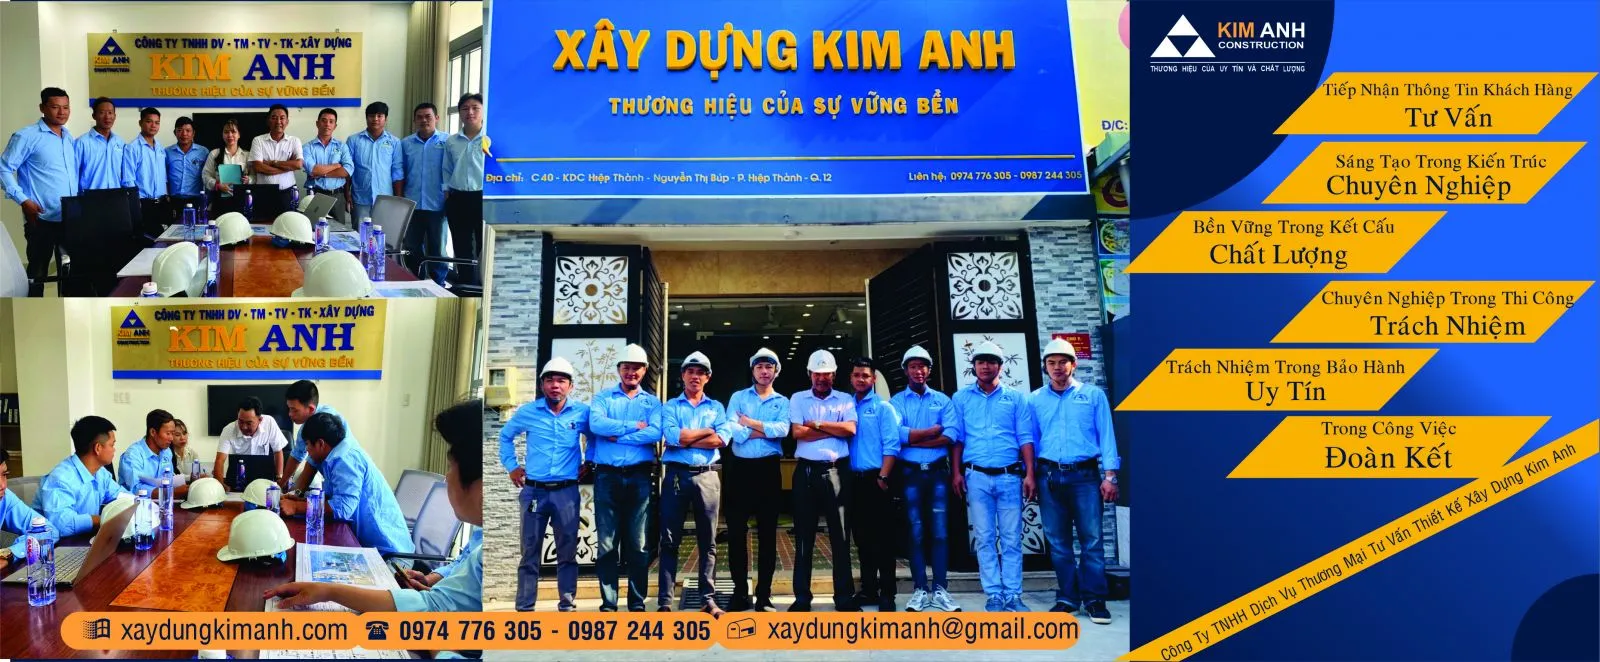 Xây Dựng Kim Anh: Công ty xây dựng nhà Quận Tân Bình